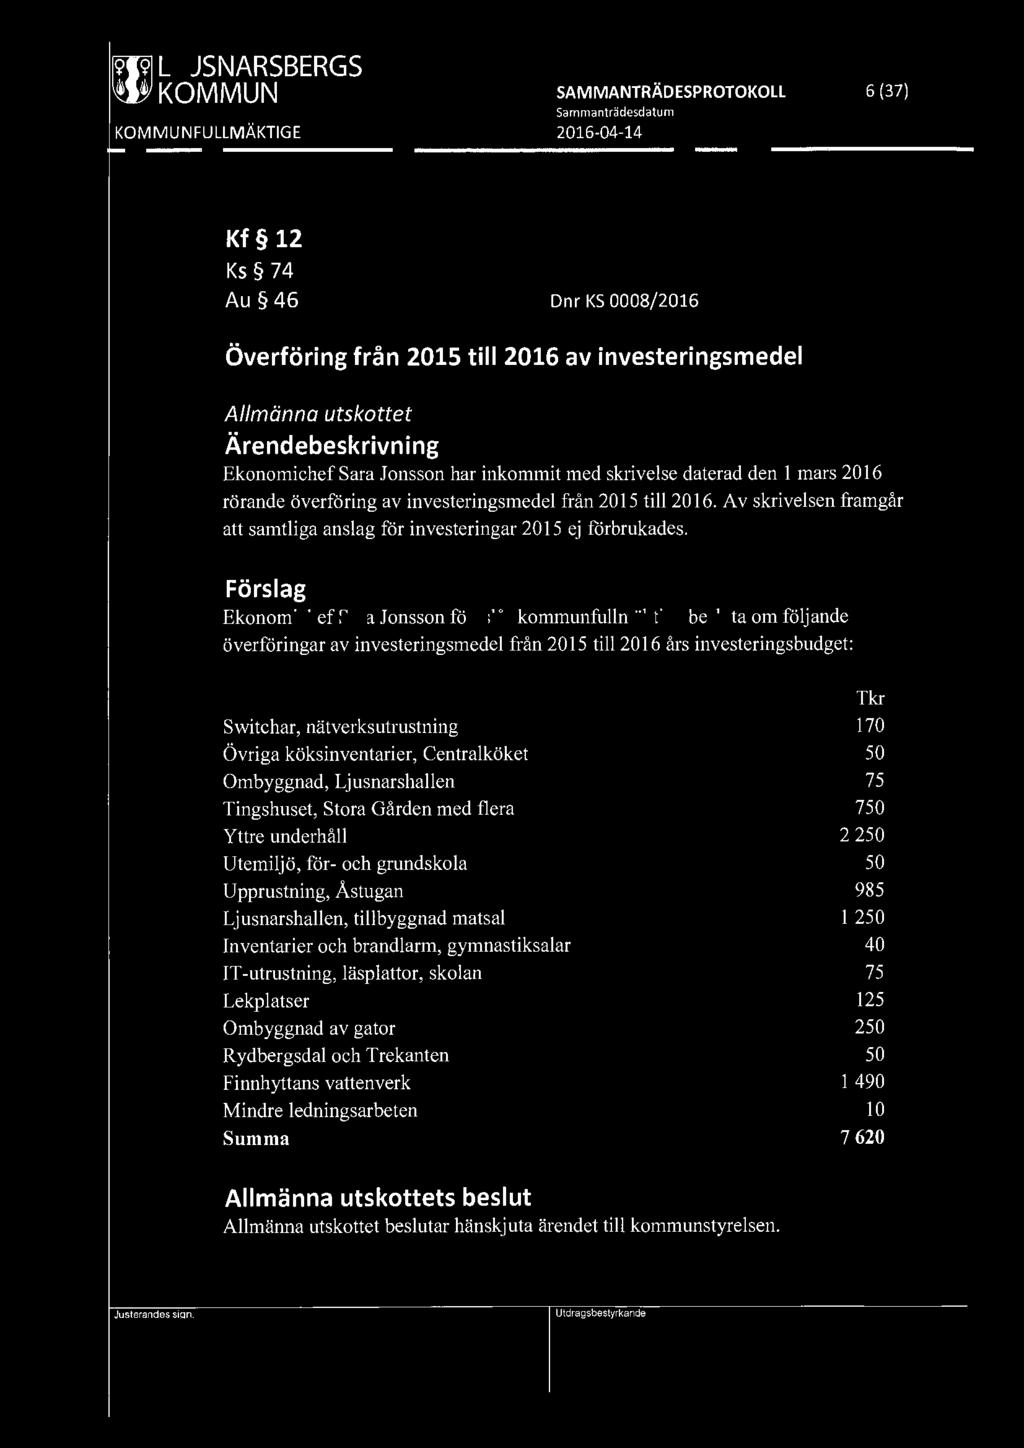 [919] LJUSNARSBERGS ~ KOMMUN SAMMANTRÄDESPROTOKOLL 6 (37) Kf 12 Ks 74 Au 46 Dnr KS 0008/2016 Överföring från 2015 till 2016 av investeringsmedel Allmänna utskottet Ekonomichef Sara Jonsson har